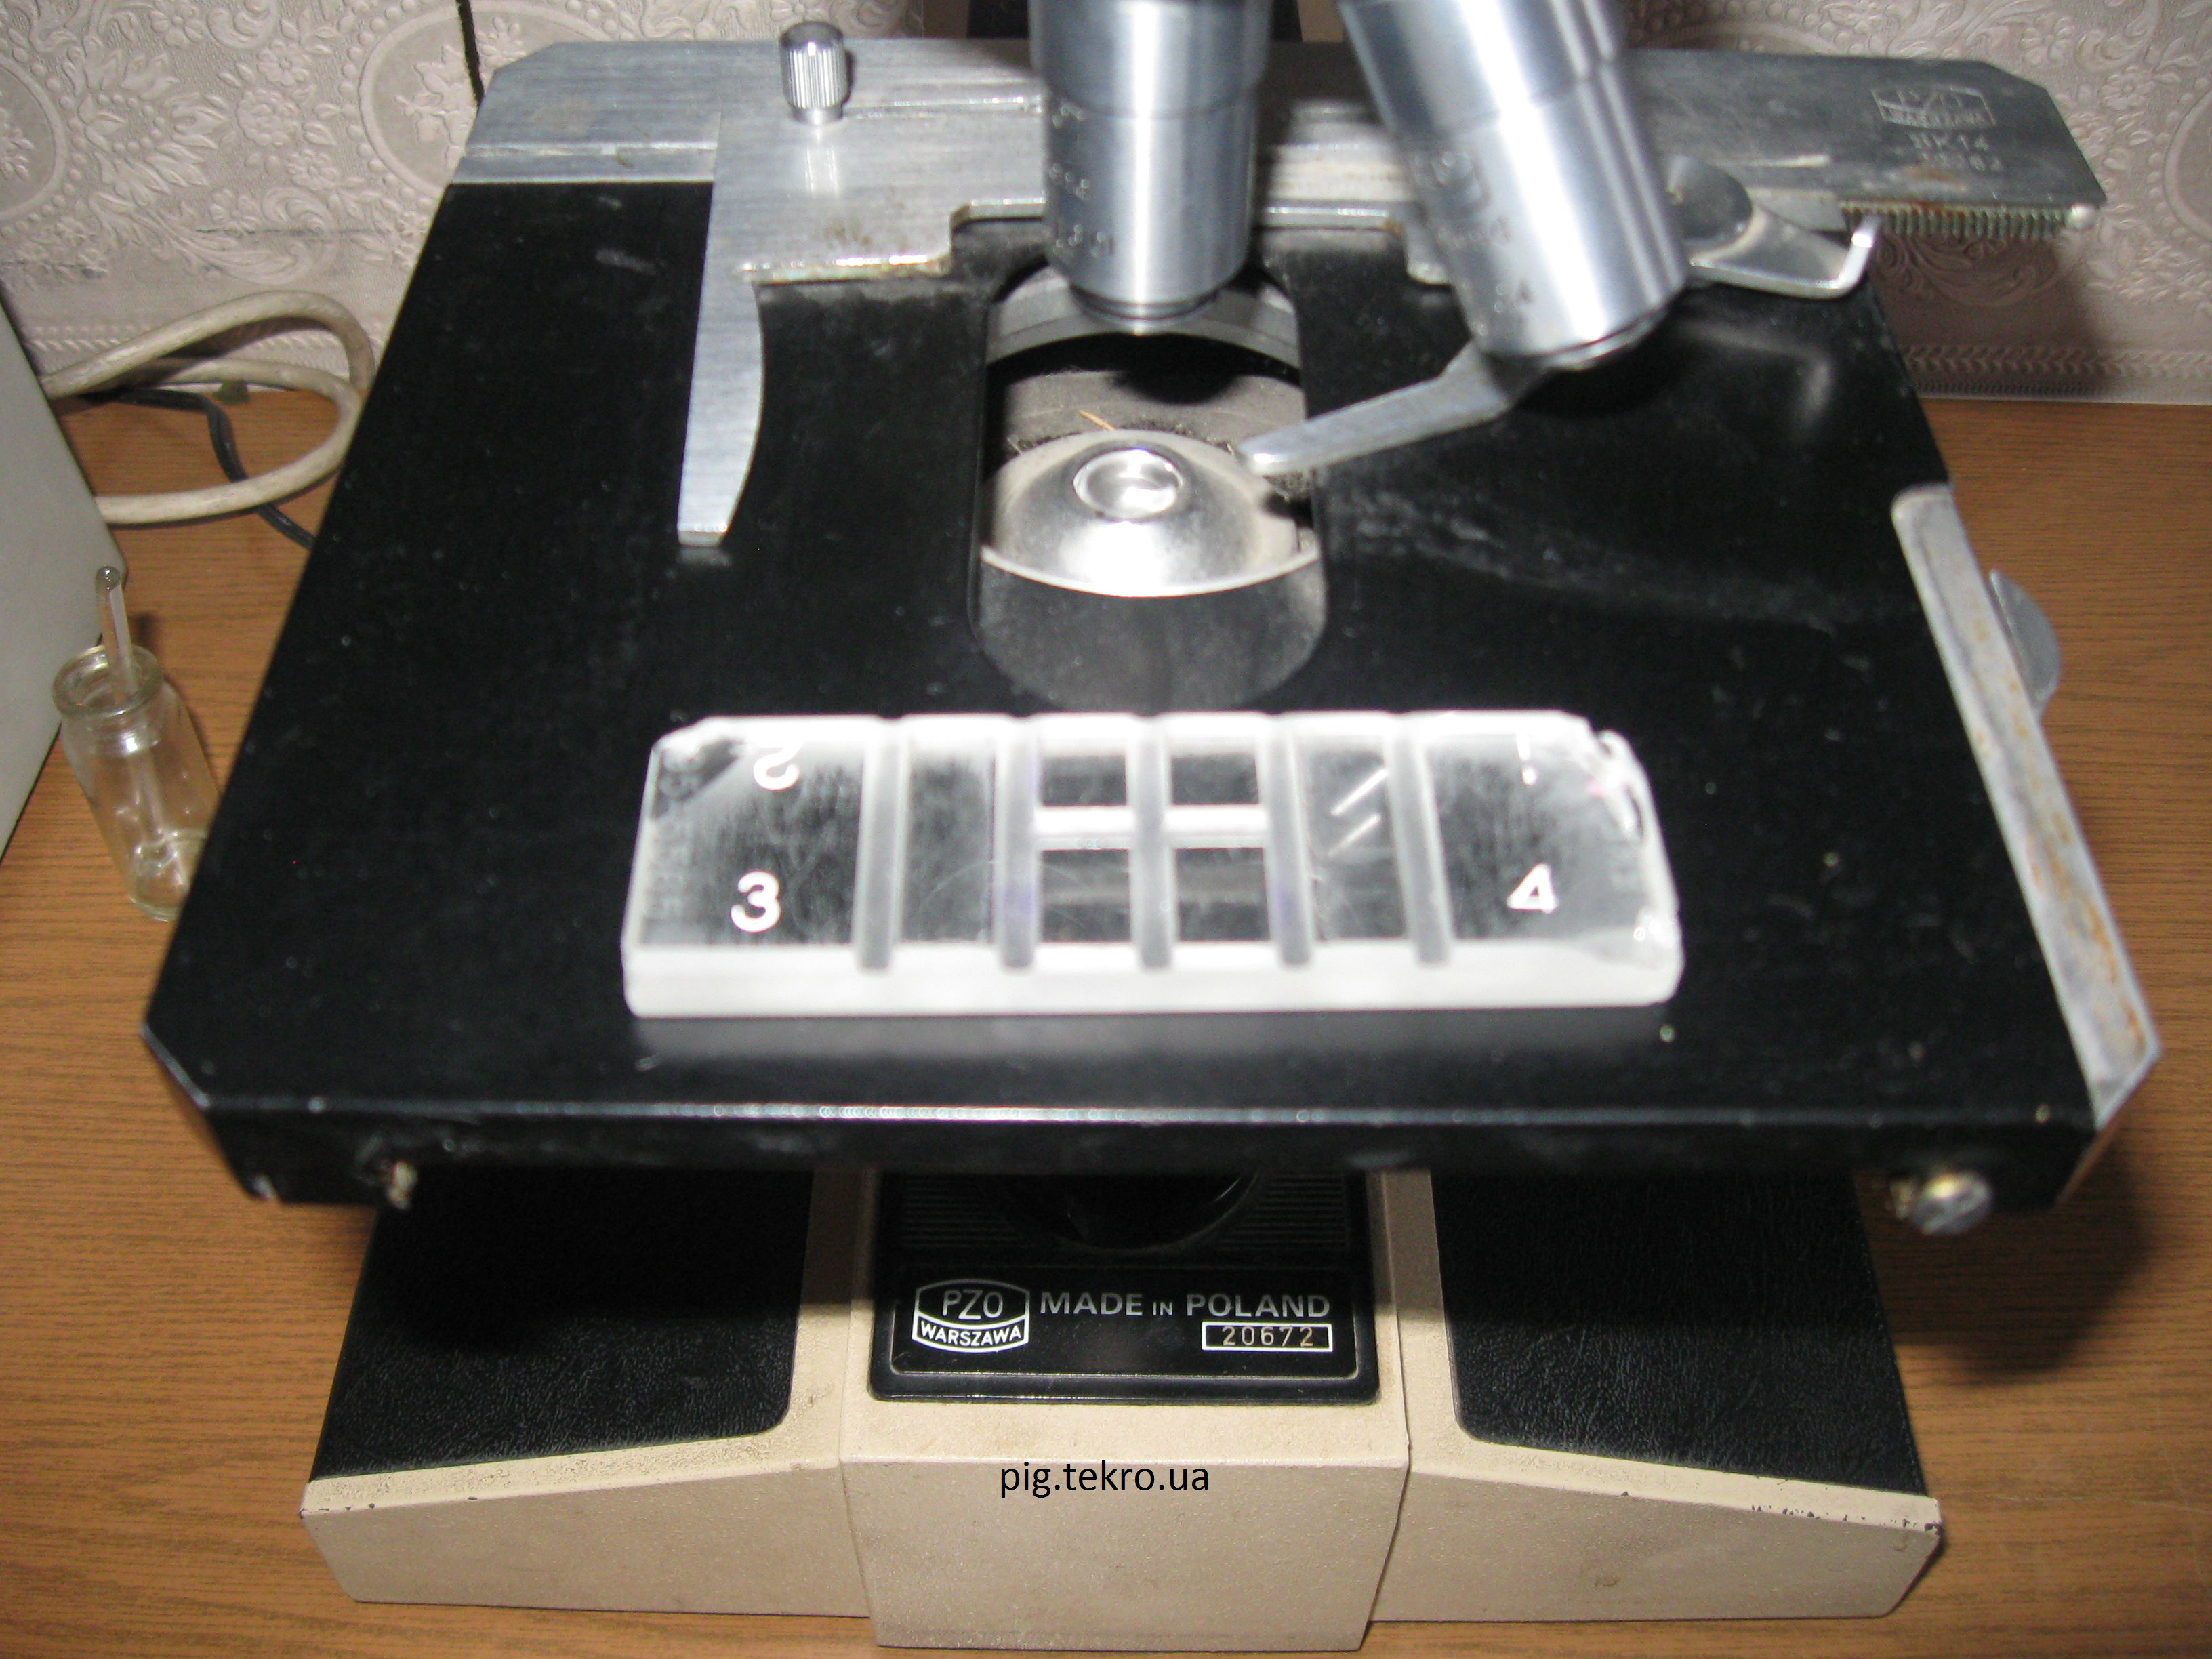 Sіtka z kameroju Gorjaєva na predmetnomu stoliku mіkroskopa